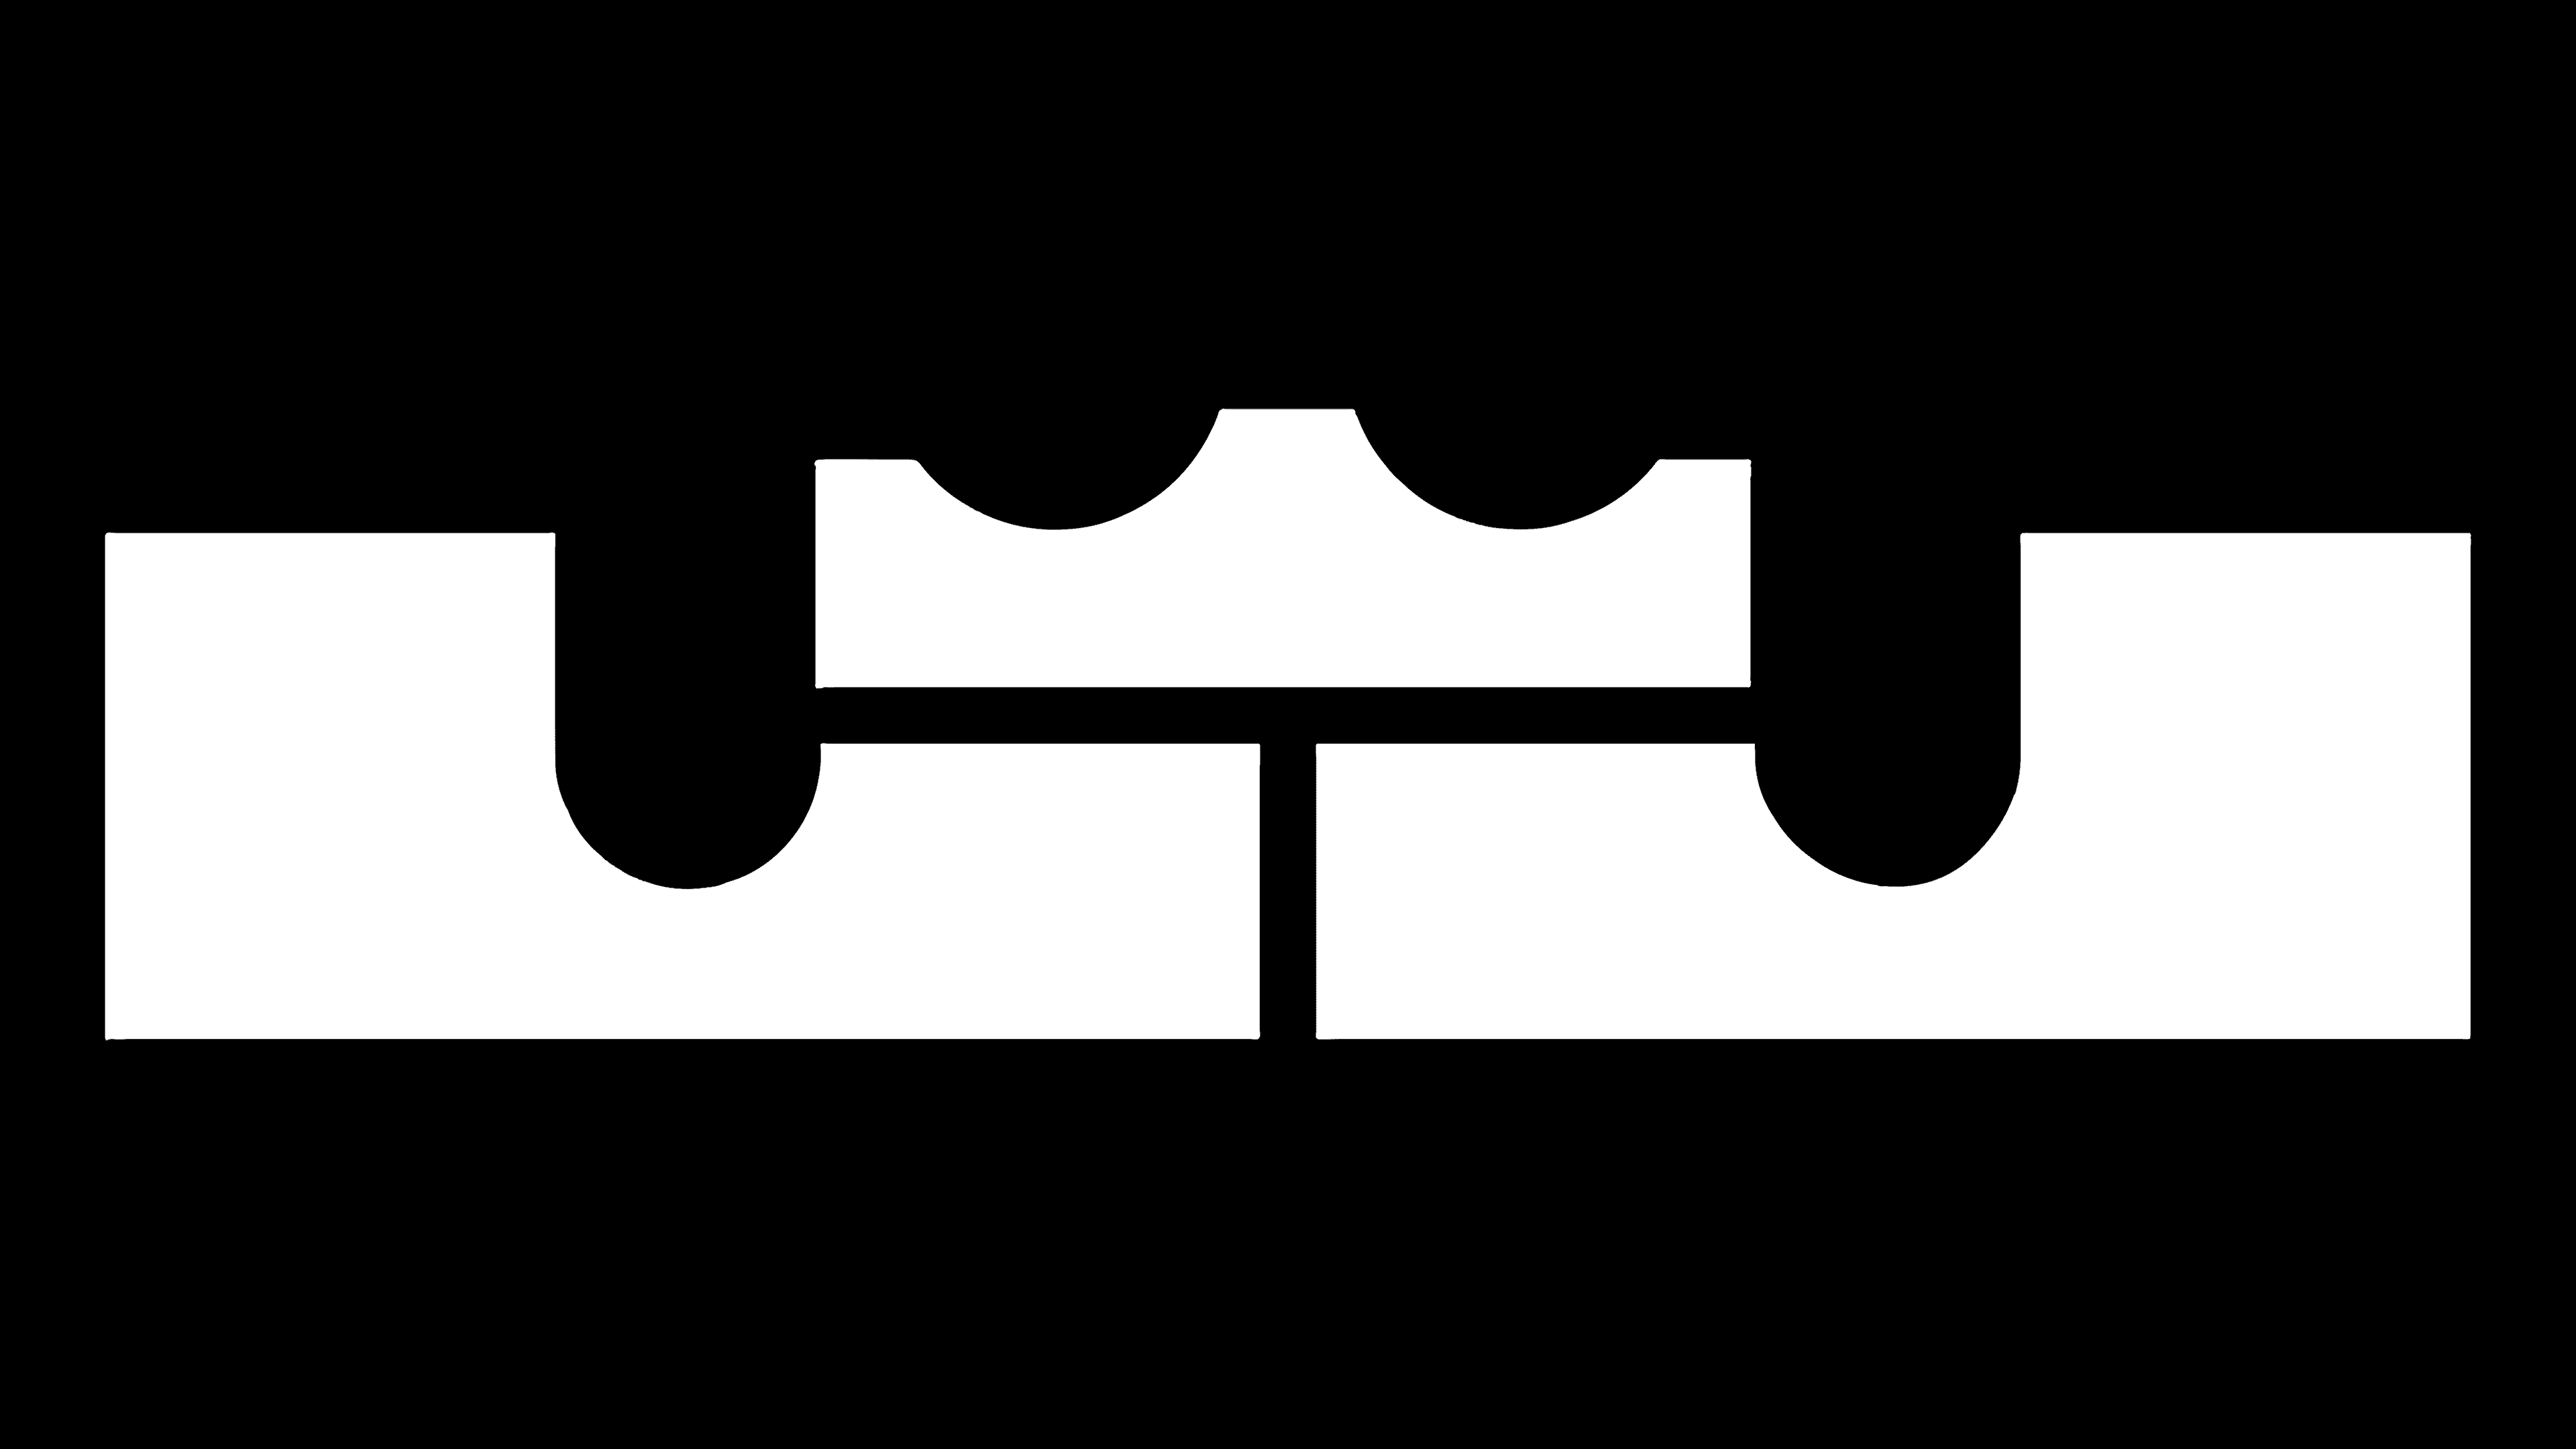 king james logo